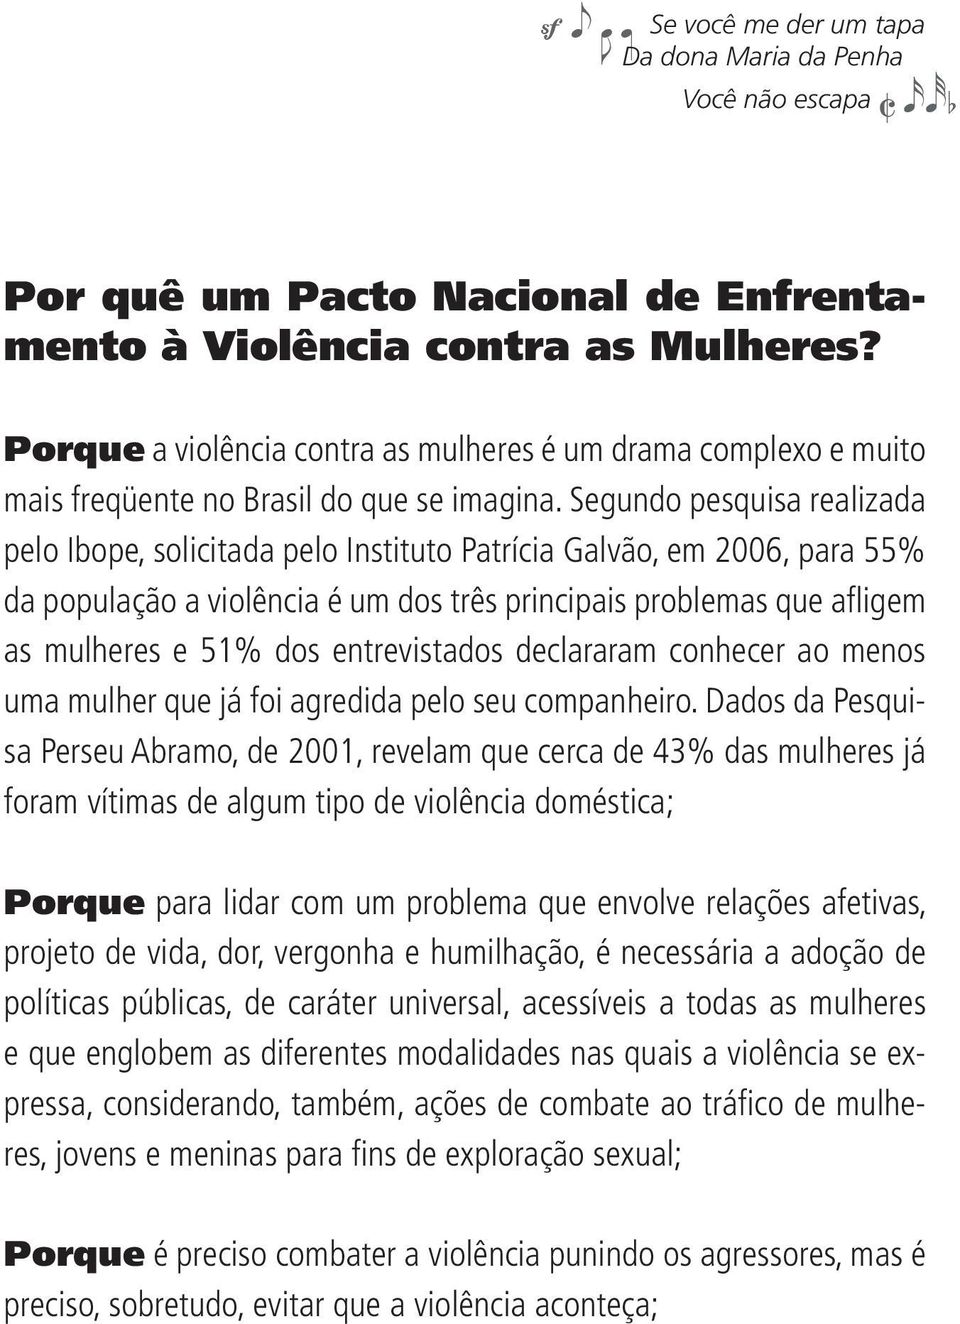 Segundo pesquisa realizada pelo Ibope, solicitada pelo Instituto Patrícia Galvão, em 2006, para 55% da população a violência é um dos três principais problemas que afl igem as mulheres e 51% dos